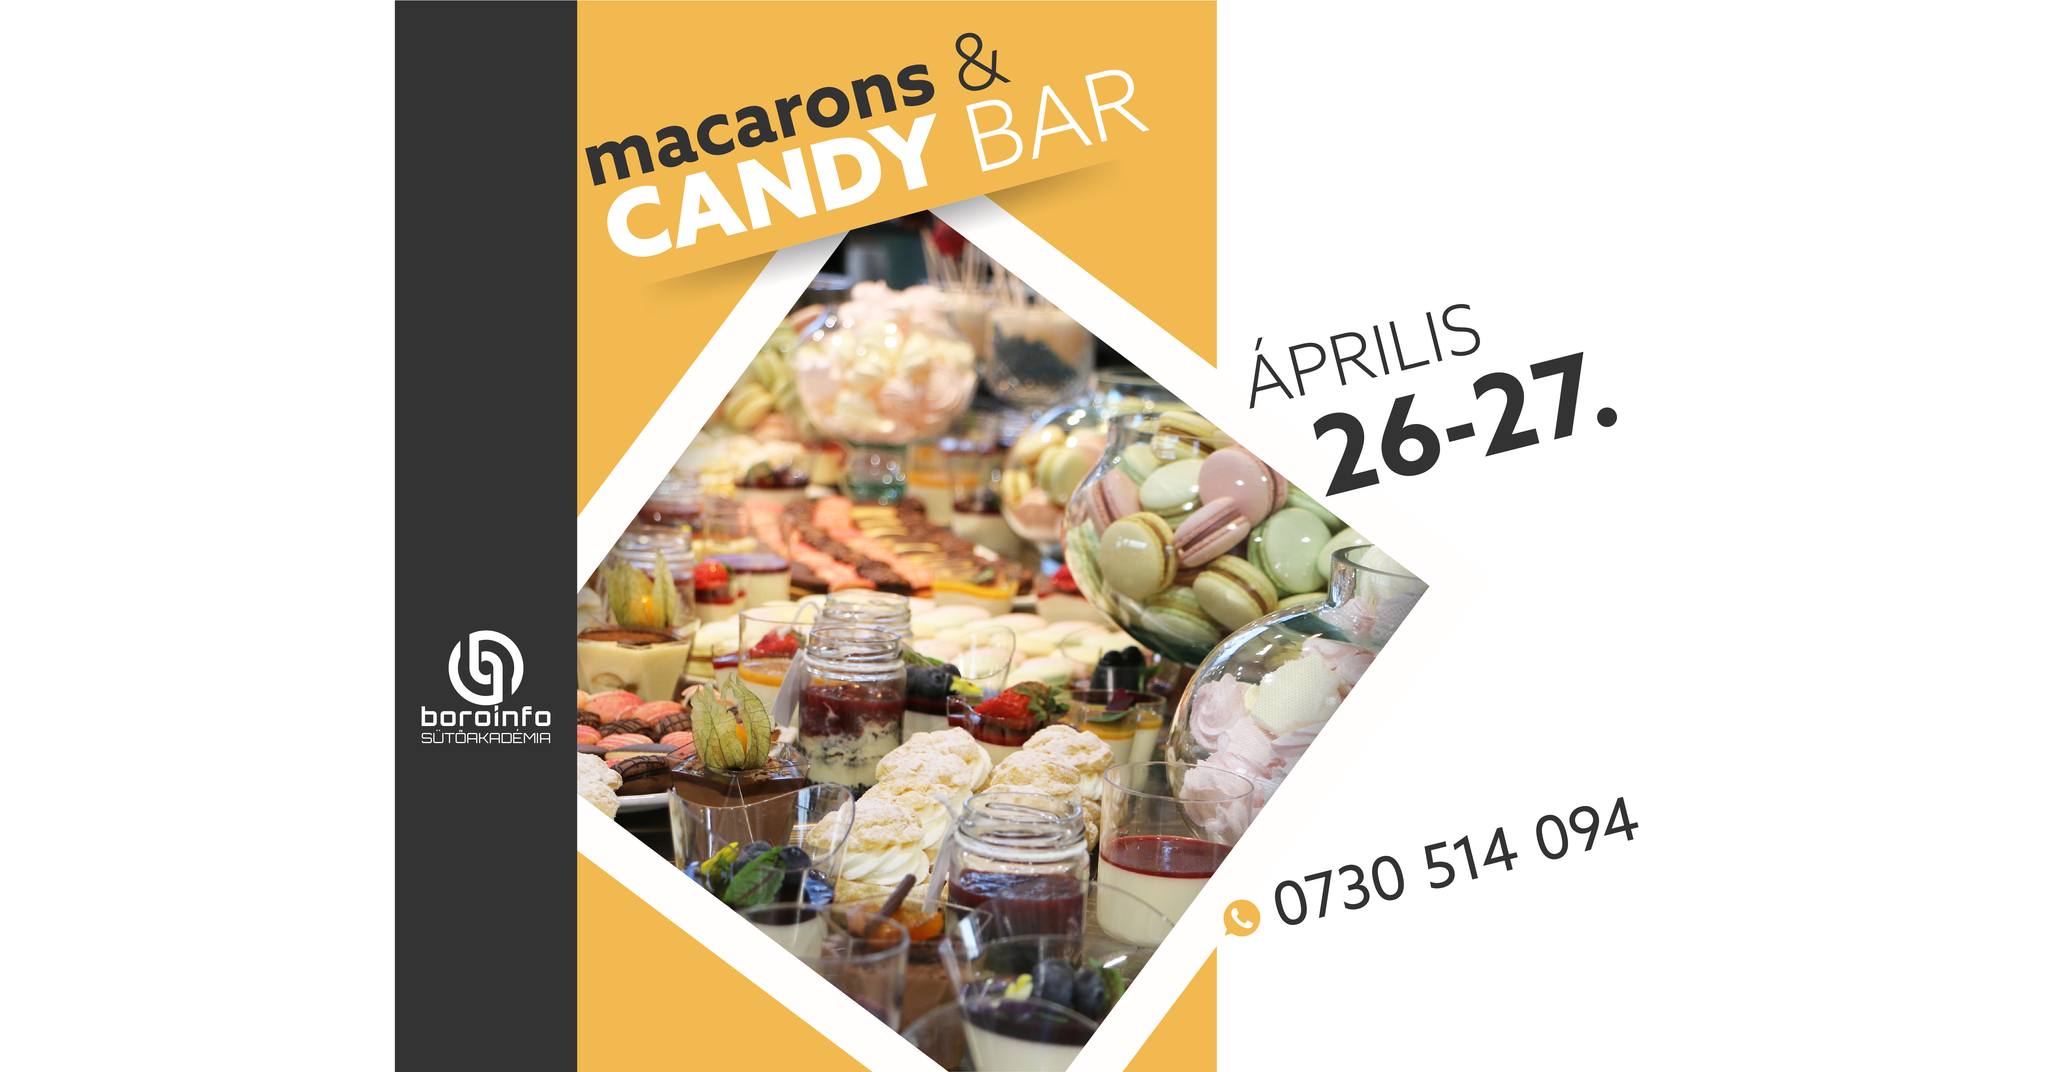 Macarons & Candy Bar